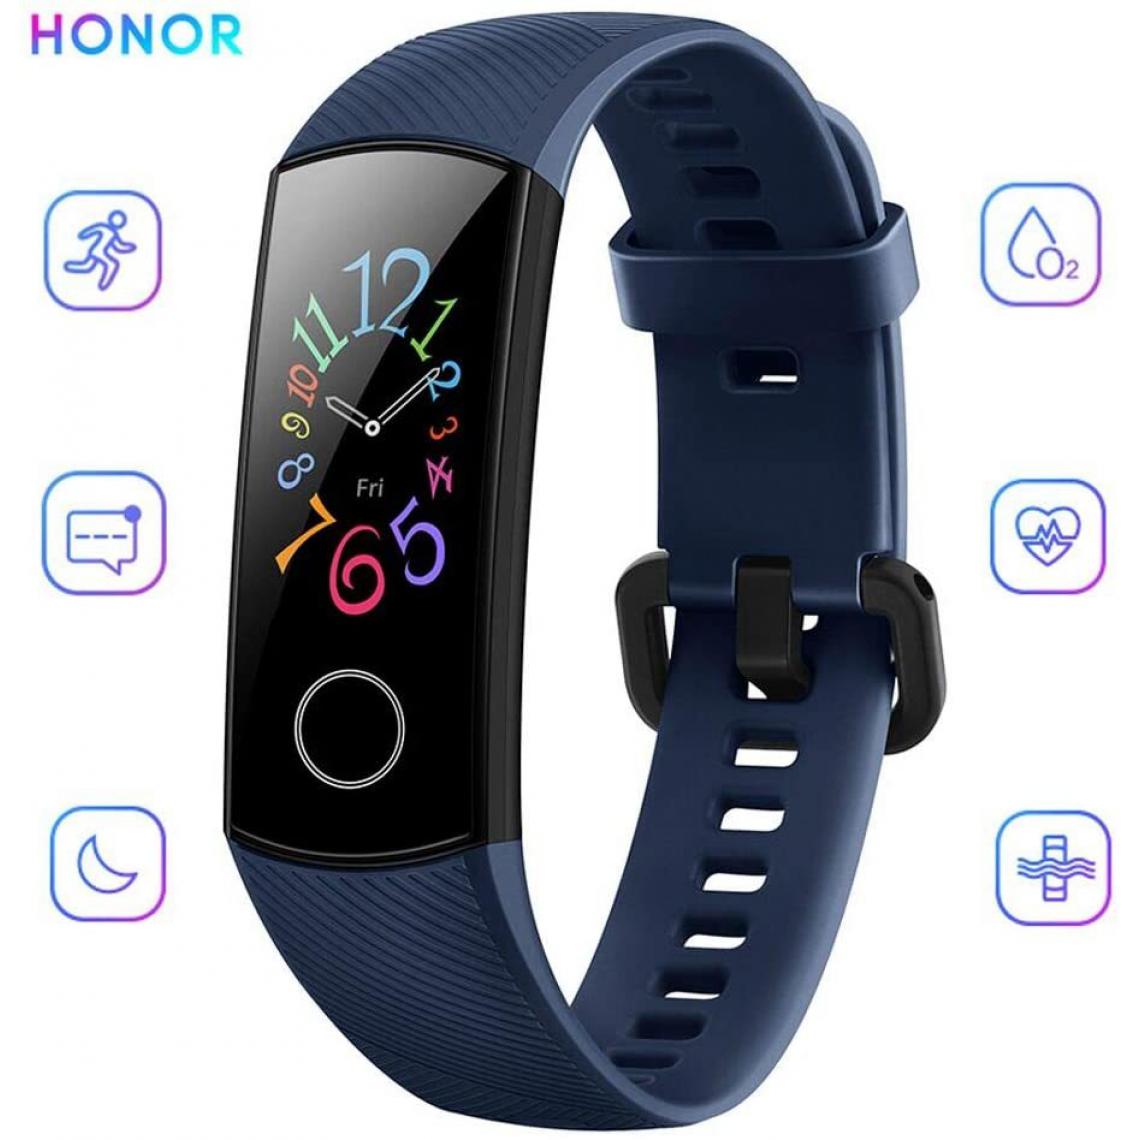 Chrono - Bracelet Connectée HONOR Band 5 pour Femme Homme Avec 5ATM Imperméable À l'eau pour Android iOS- Bleu - Montre connectée